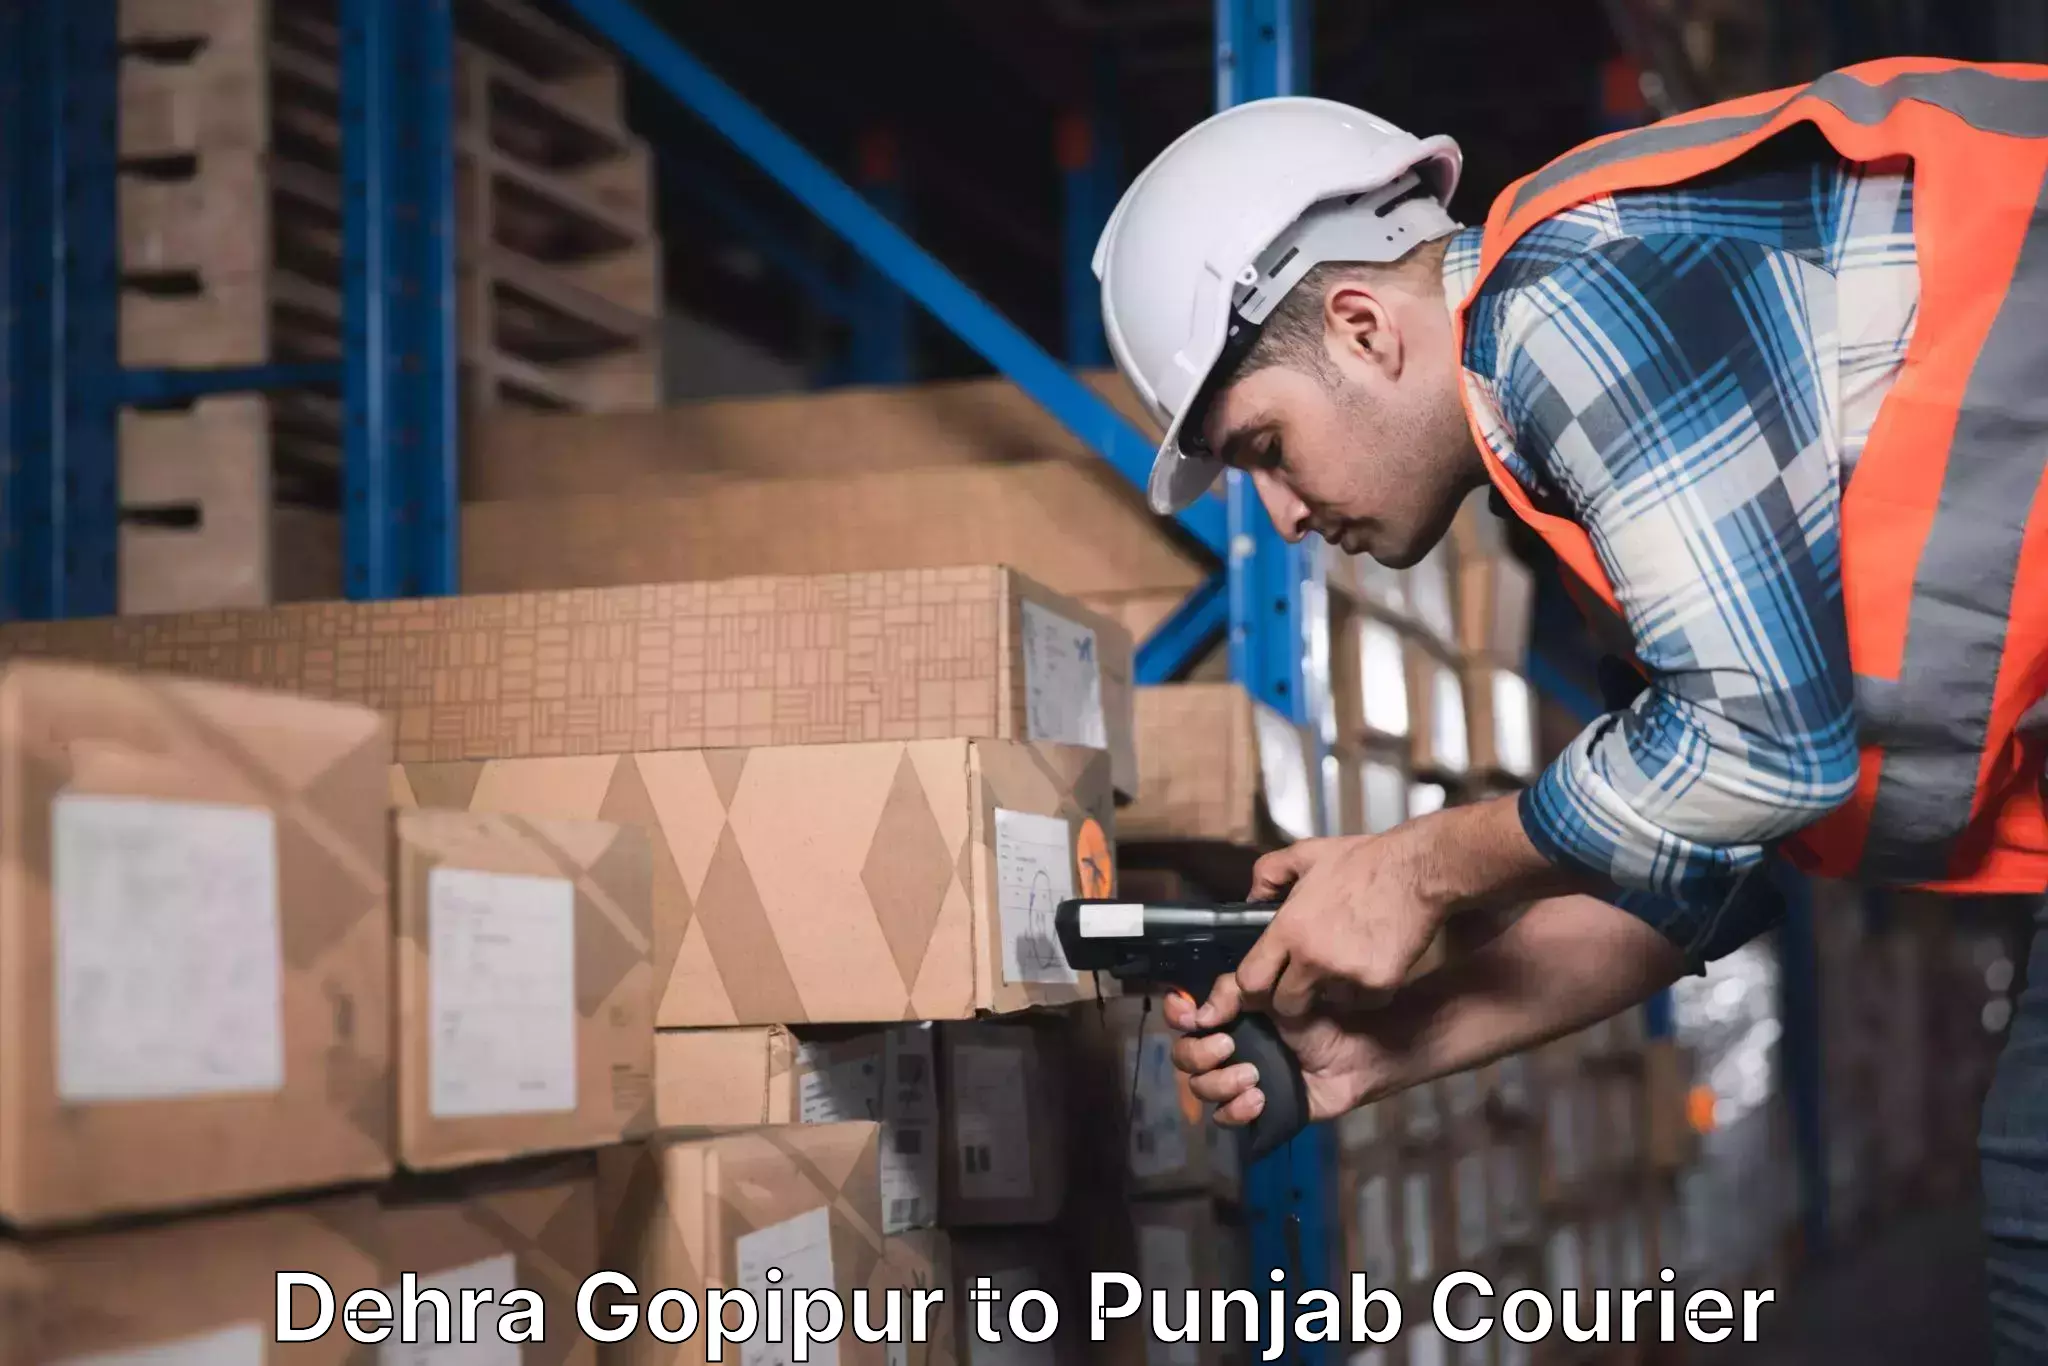 Efficient freight service Dehra Gopipur to Sirhind Fatehgarh